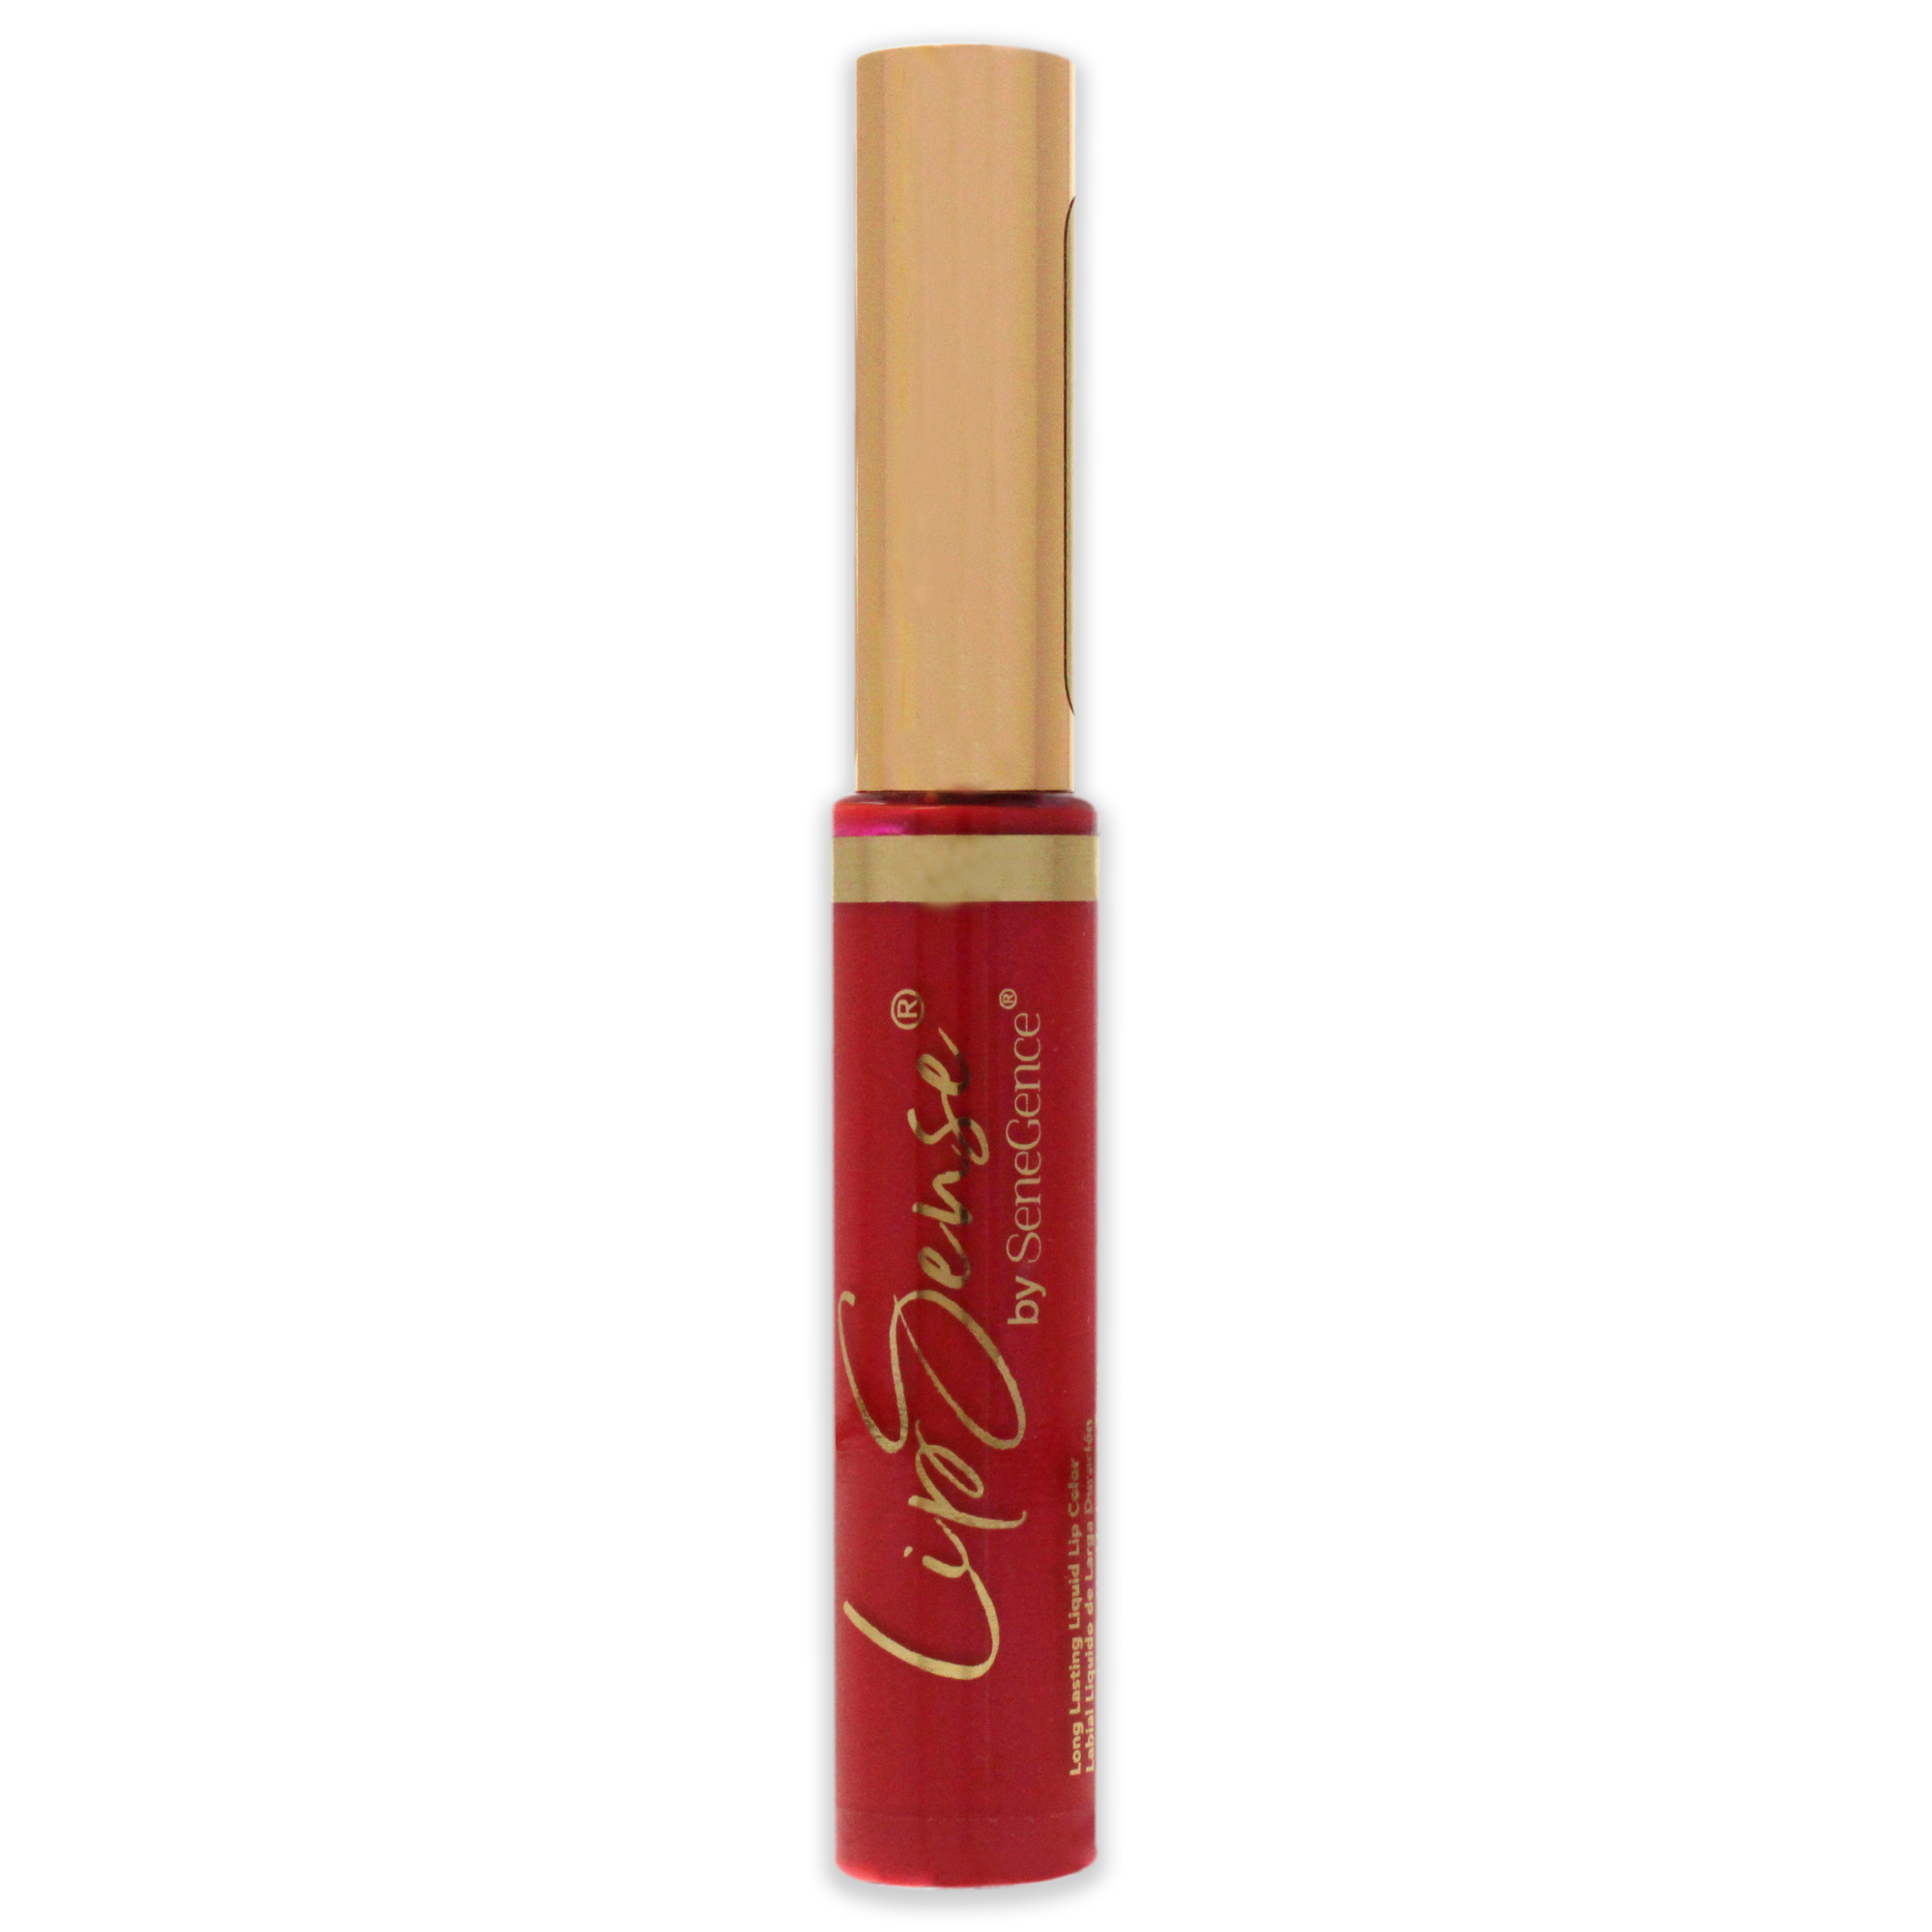 LipSense Liquid Lip Color - Fuscia by SeneGence for Women - 0.25 oz Lipstick